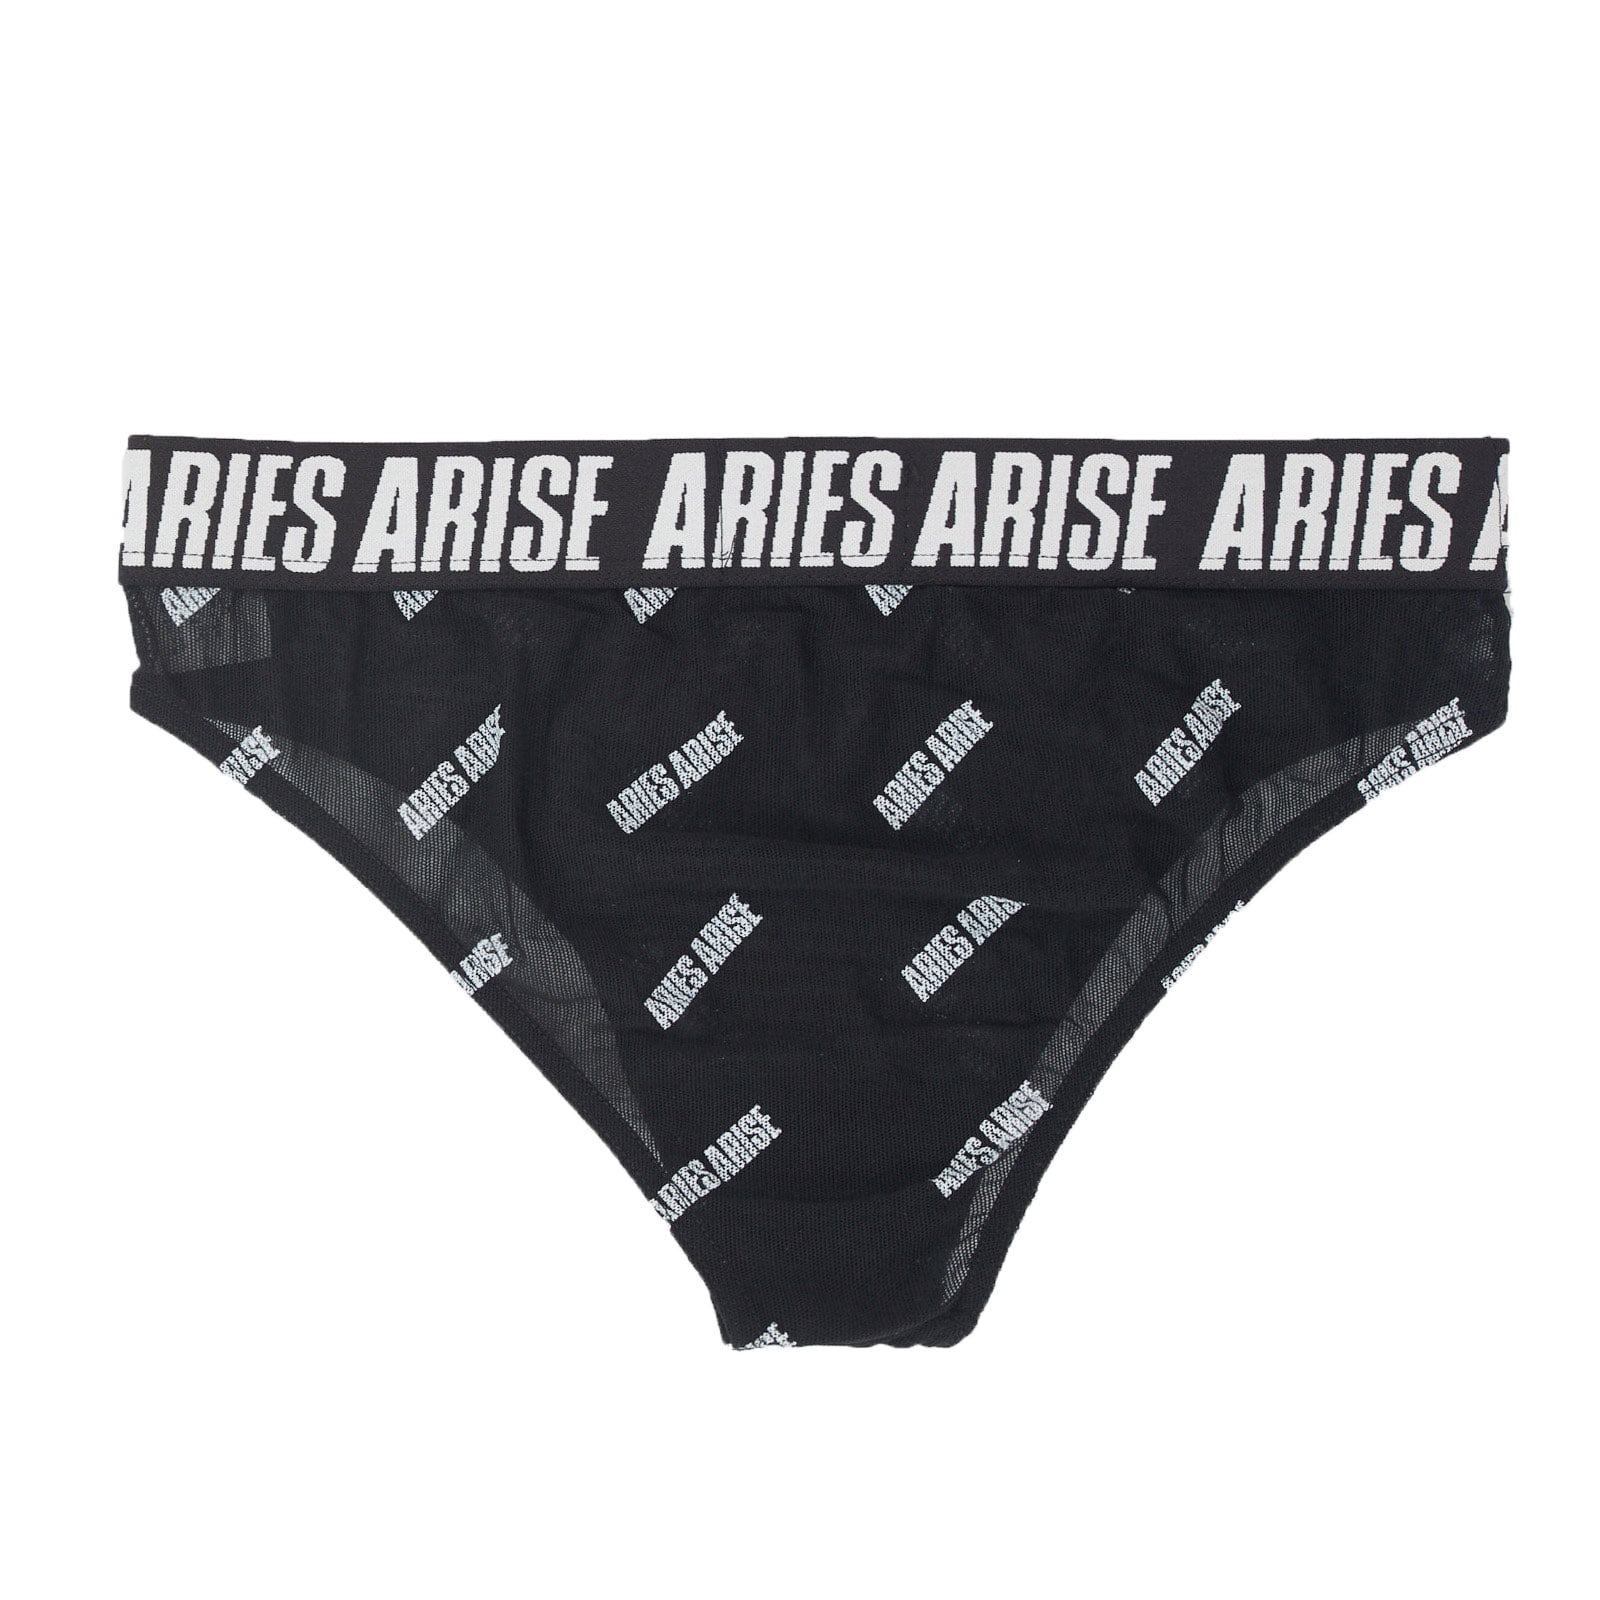 Aries Black Ribbed High Waist Briefs ARIES